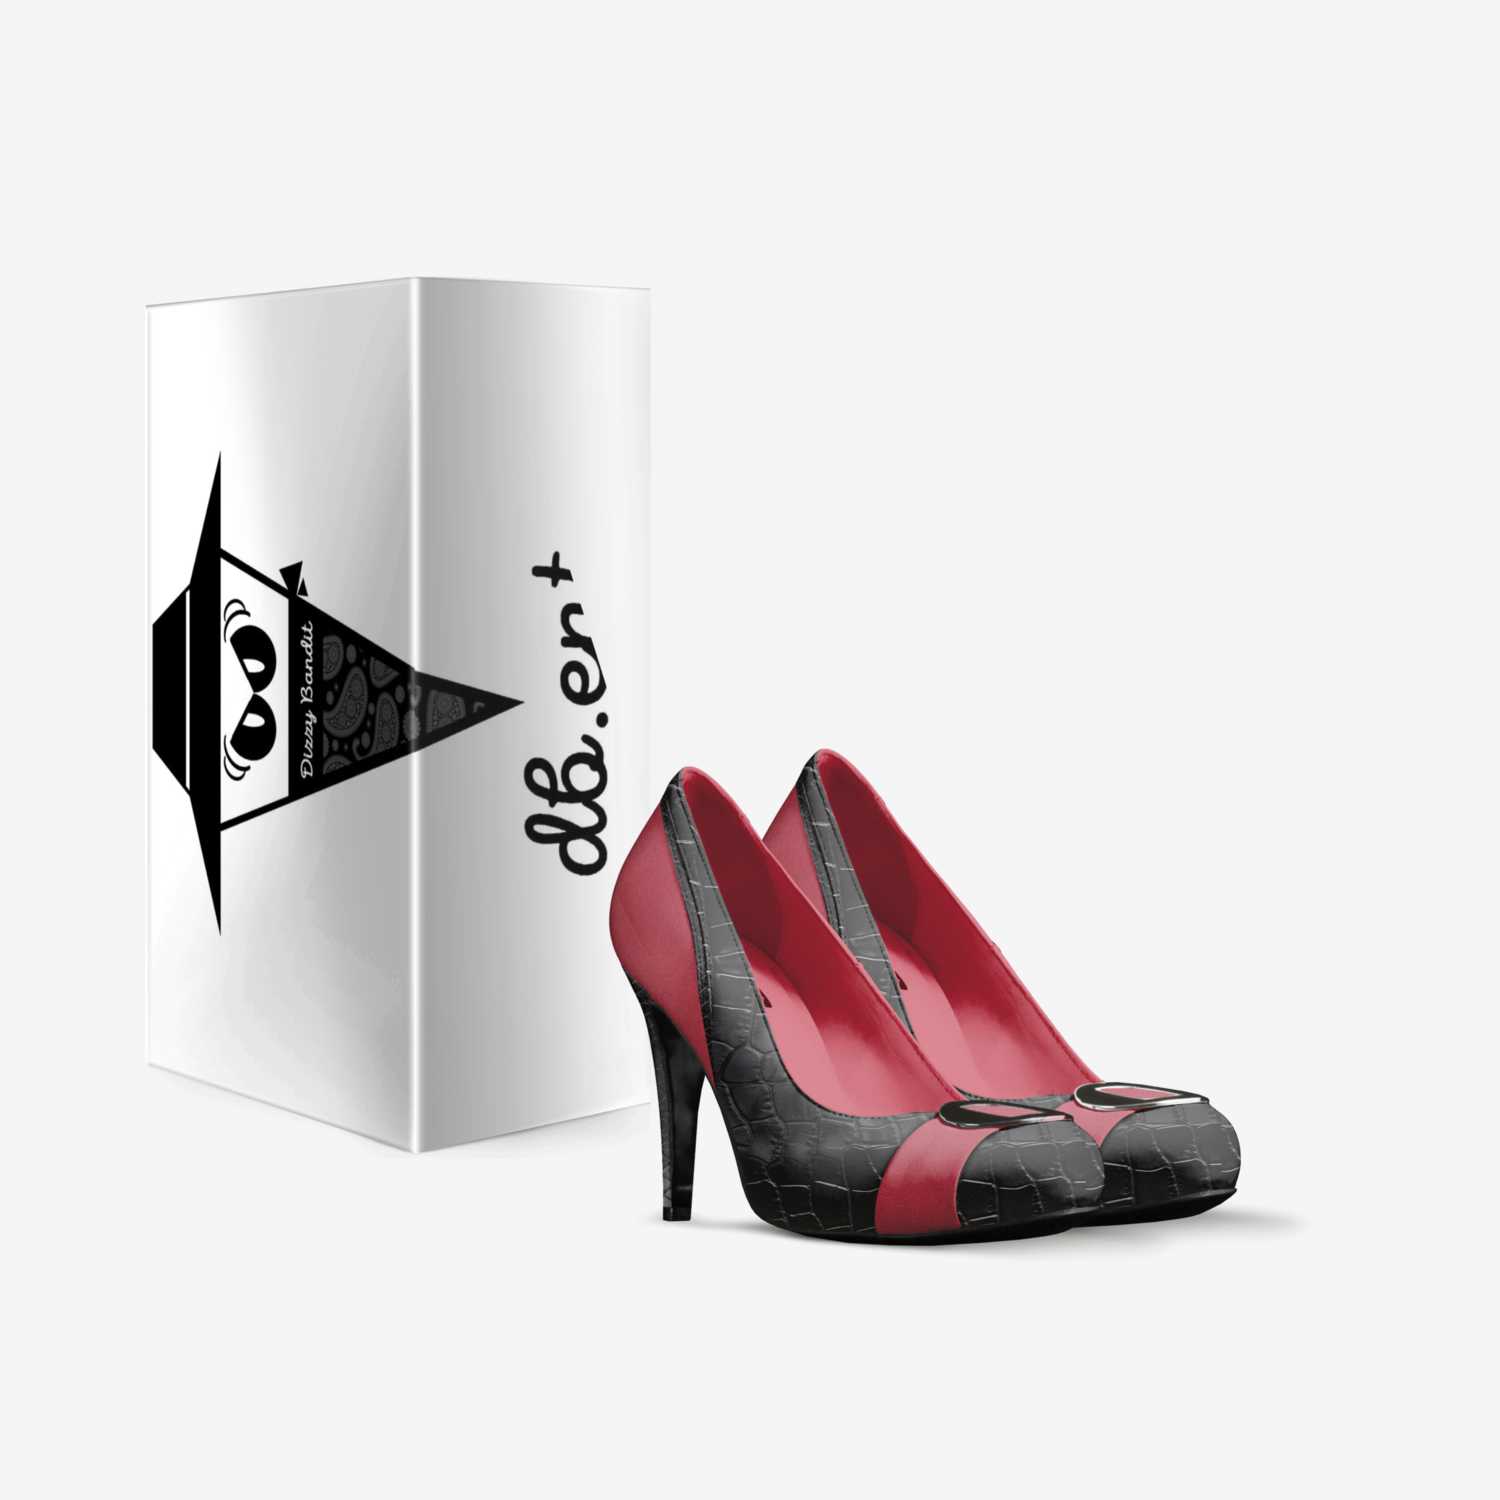 Regina Leggendaria custom made in Italy shoes by William Mclellan | Box view